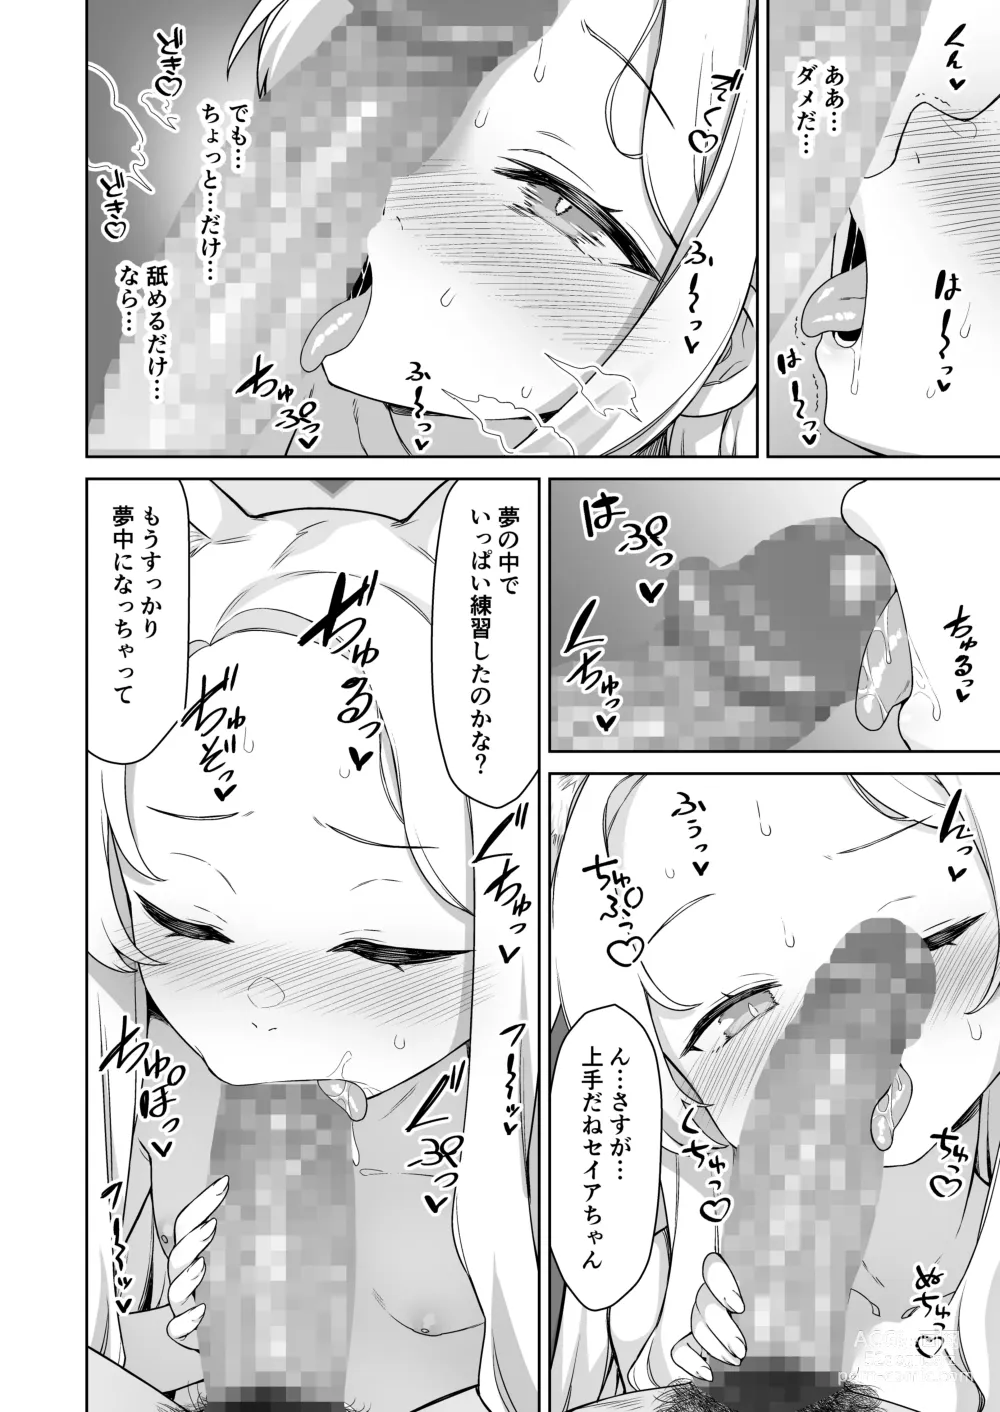 Page 8 of doujinshi Yurizono Seia wa Koyoi mo Midara na Yume wo Miru.